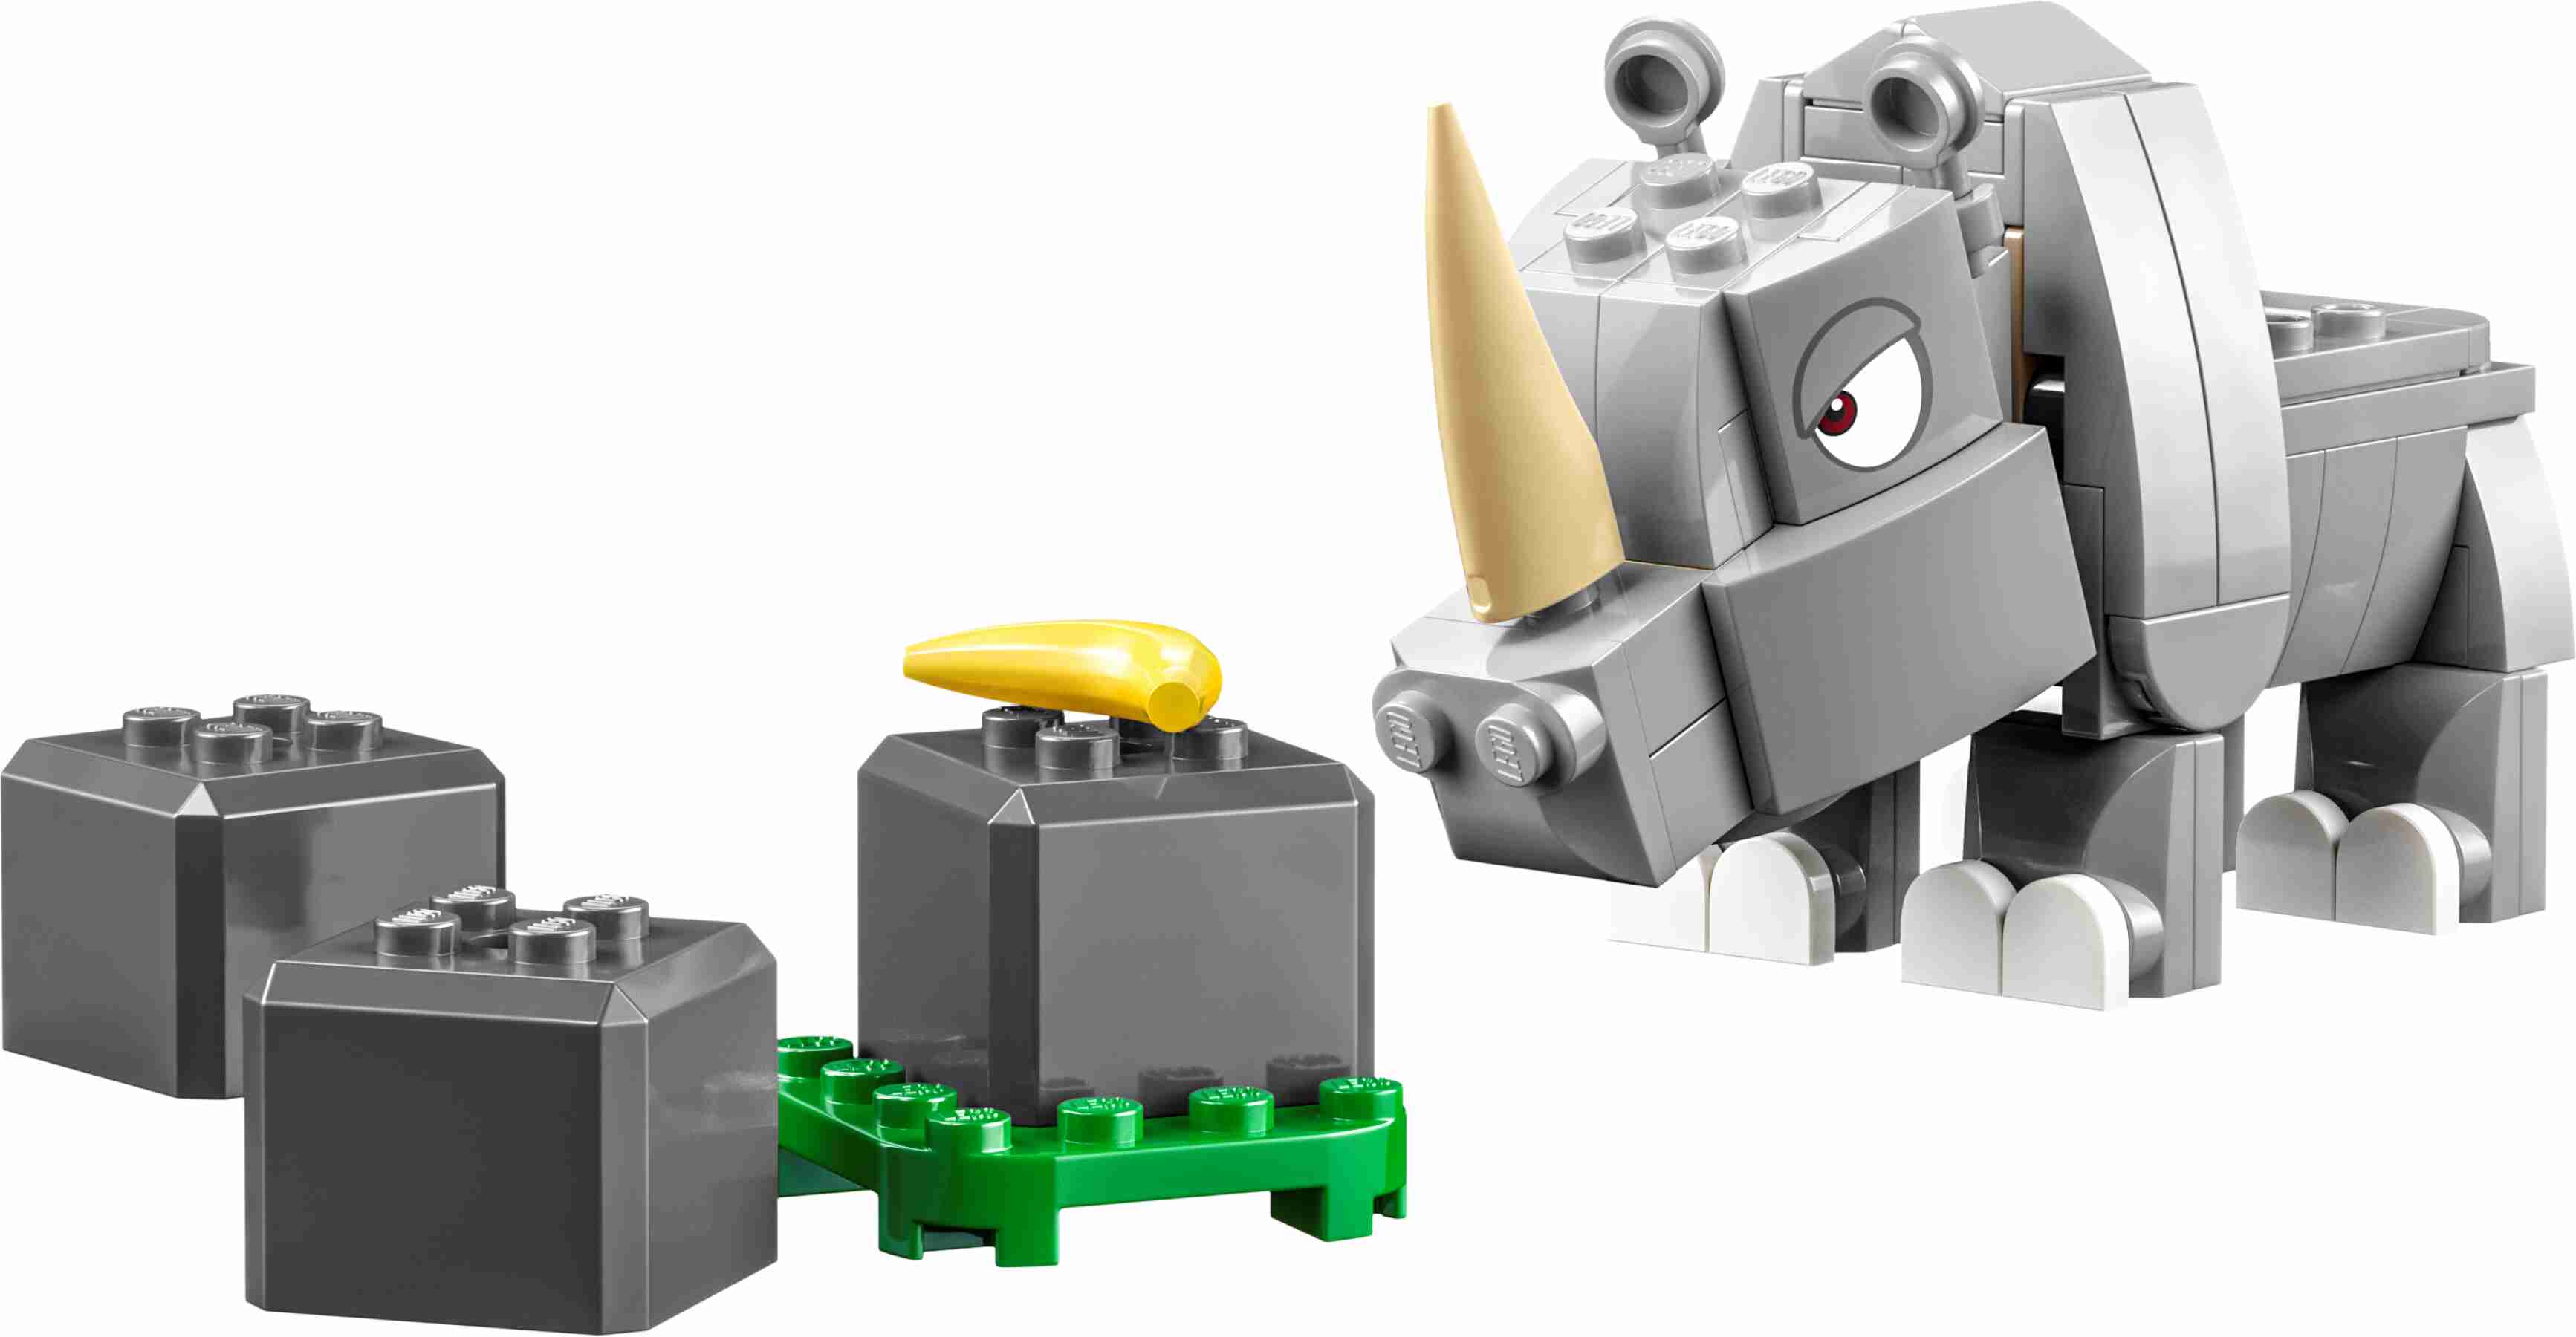 LEGO 71420 Super Mario Rambi das Rhino – Erweiterungsset